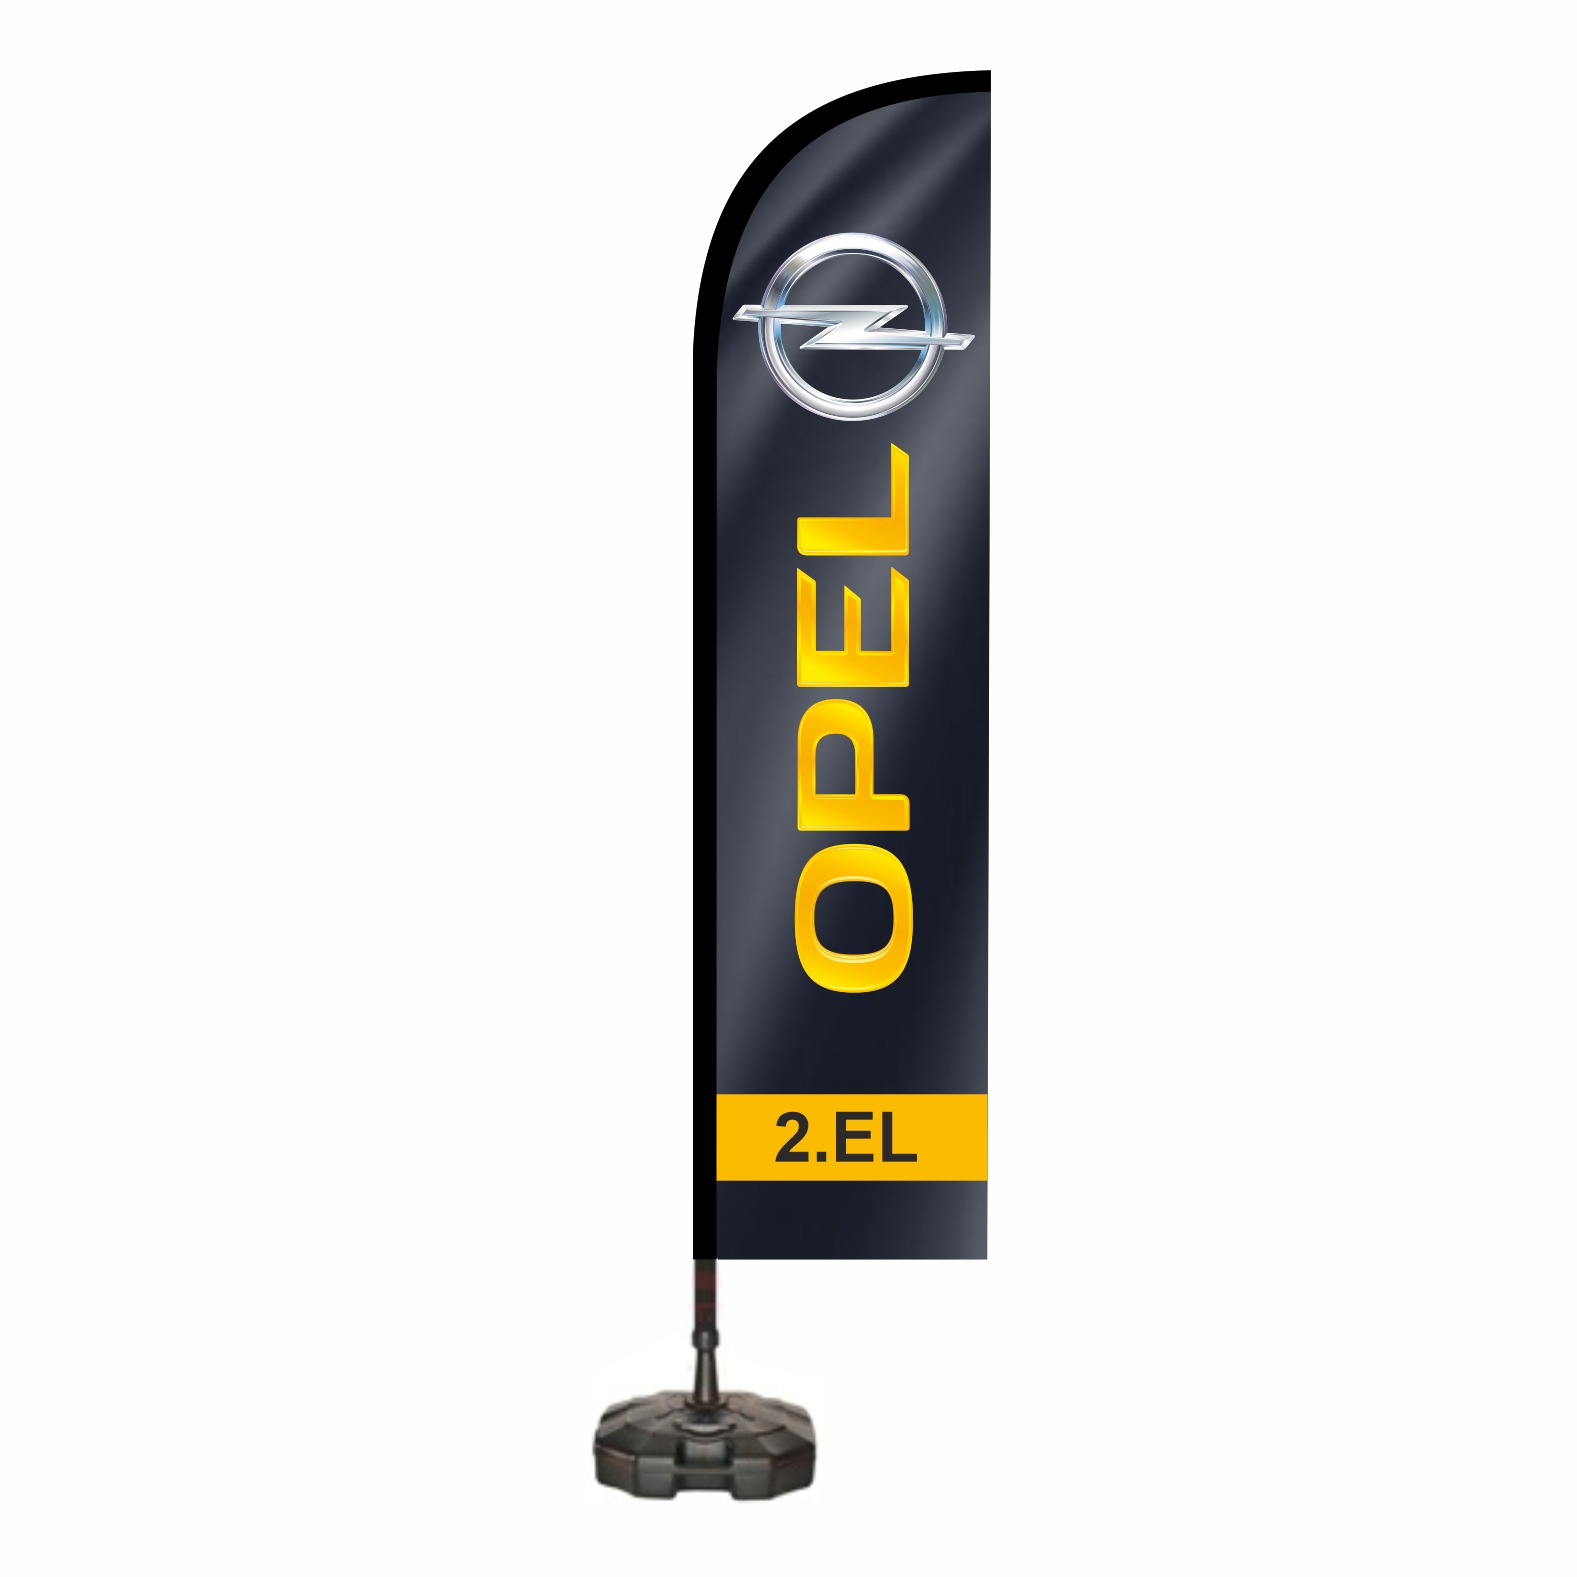 Opel Oltal bayraklar